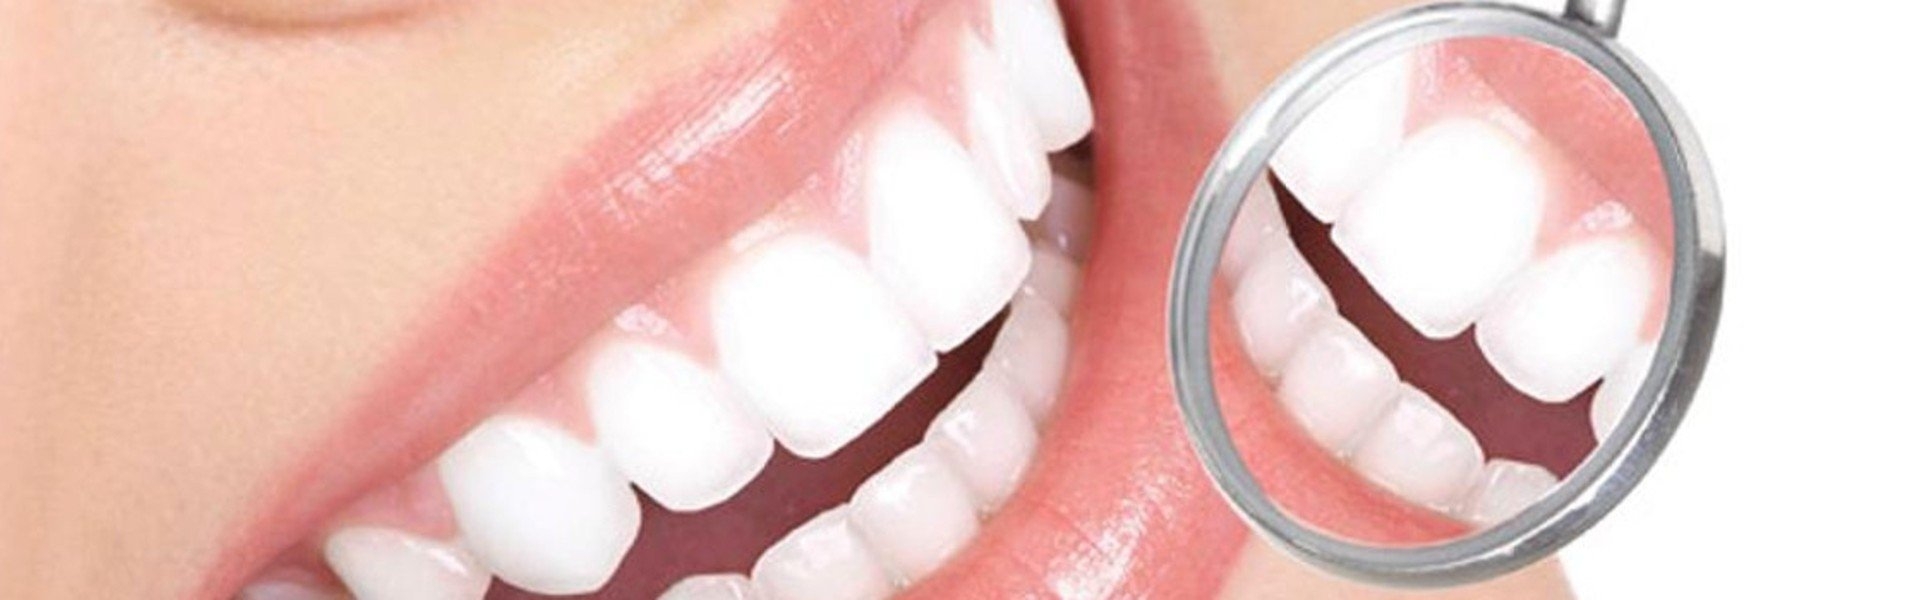 Stomatolog Chorzów - Leczenie endodontyczne zębów dzieci i dorosłych